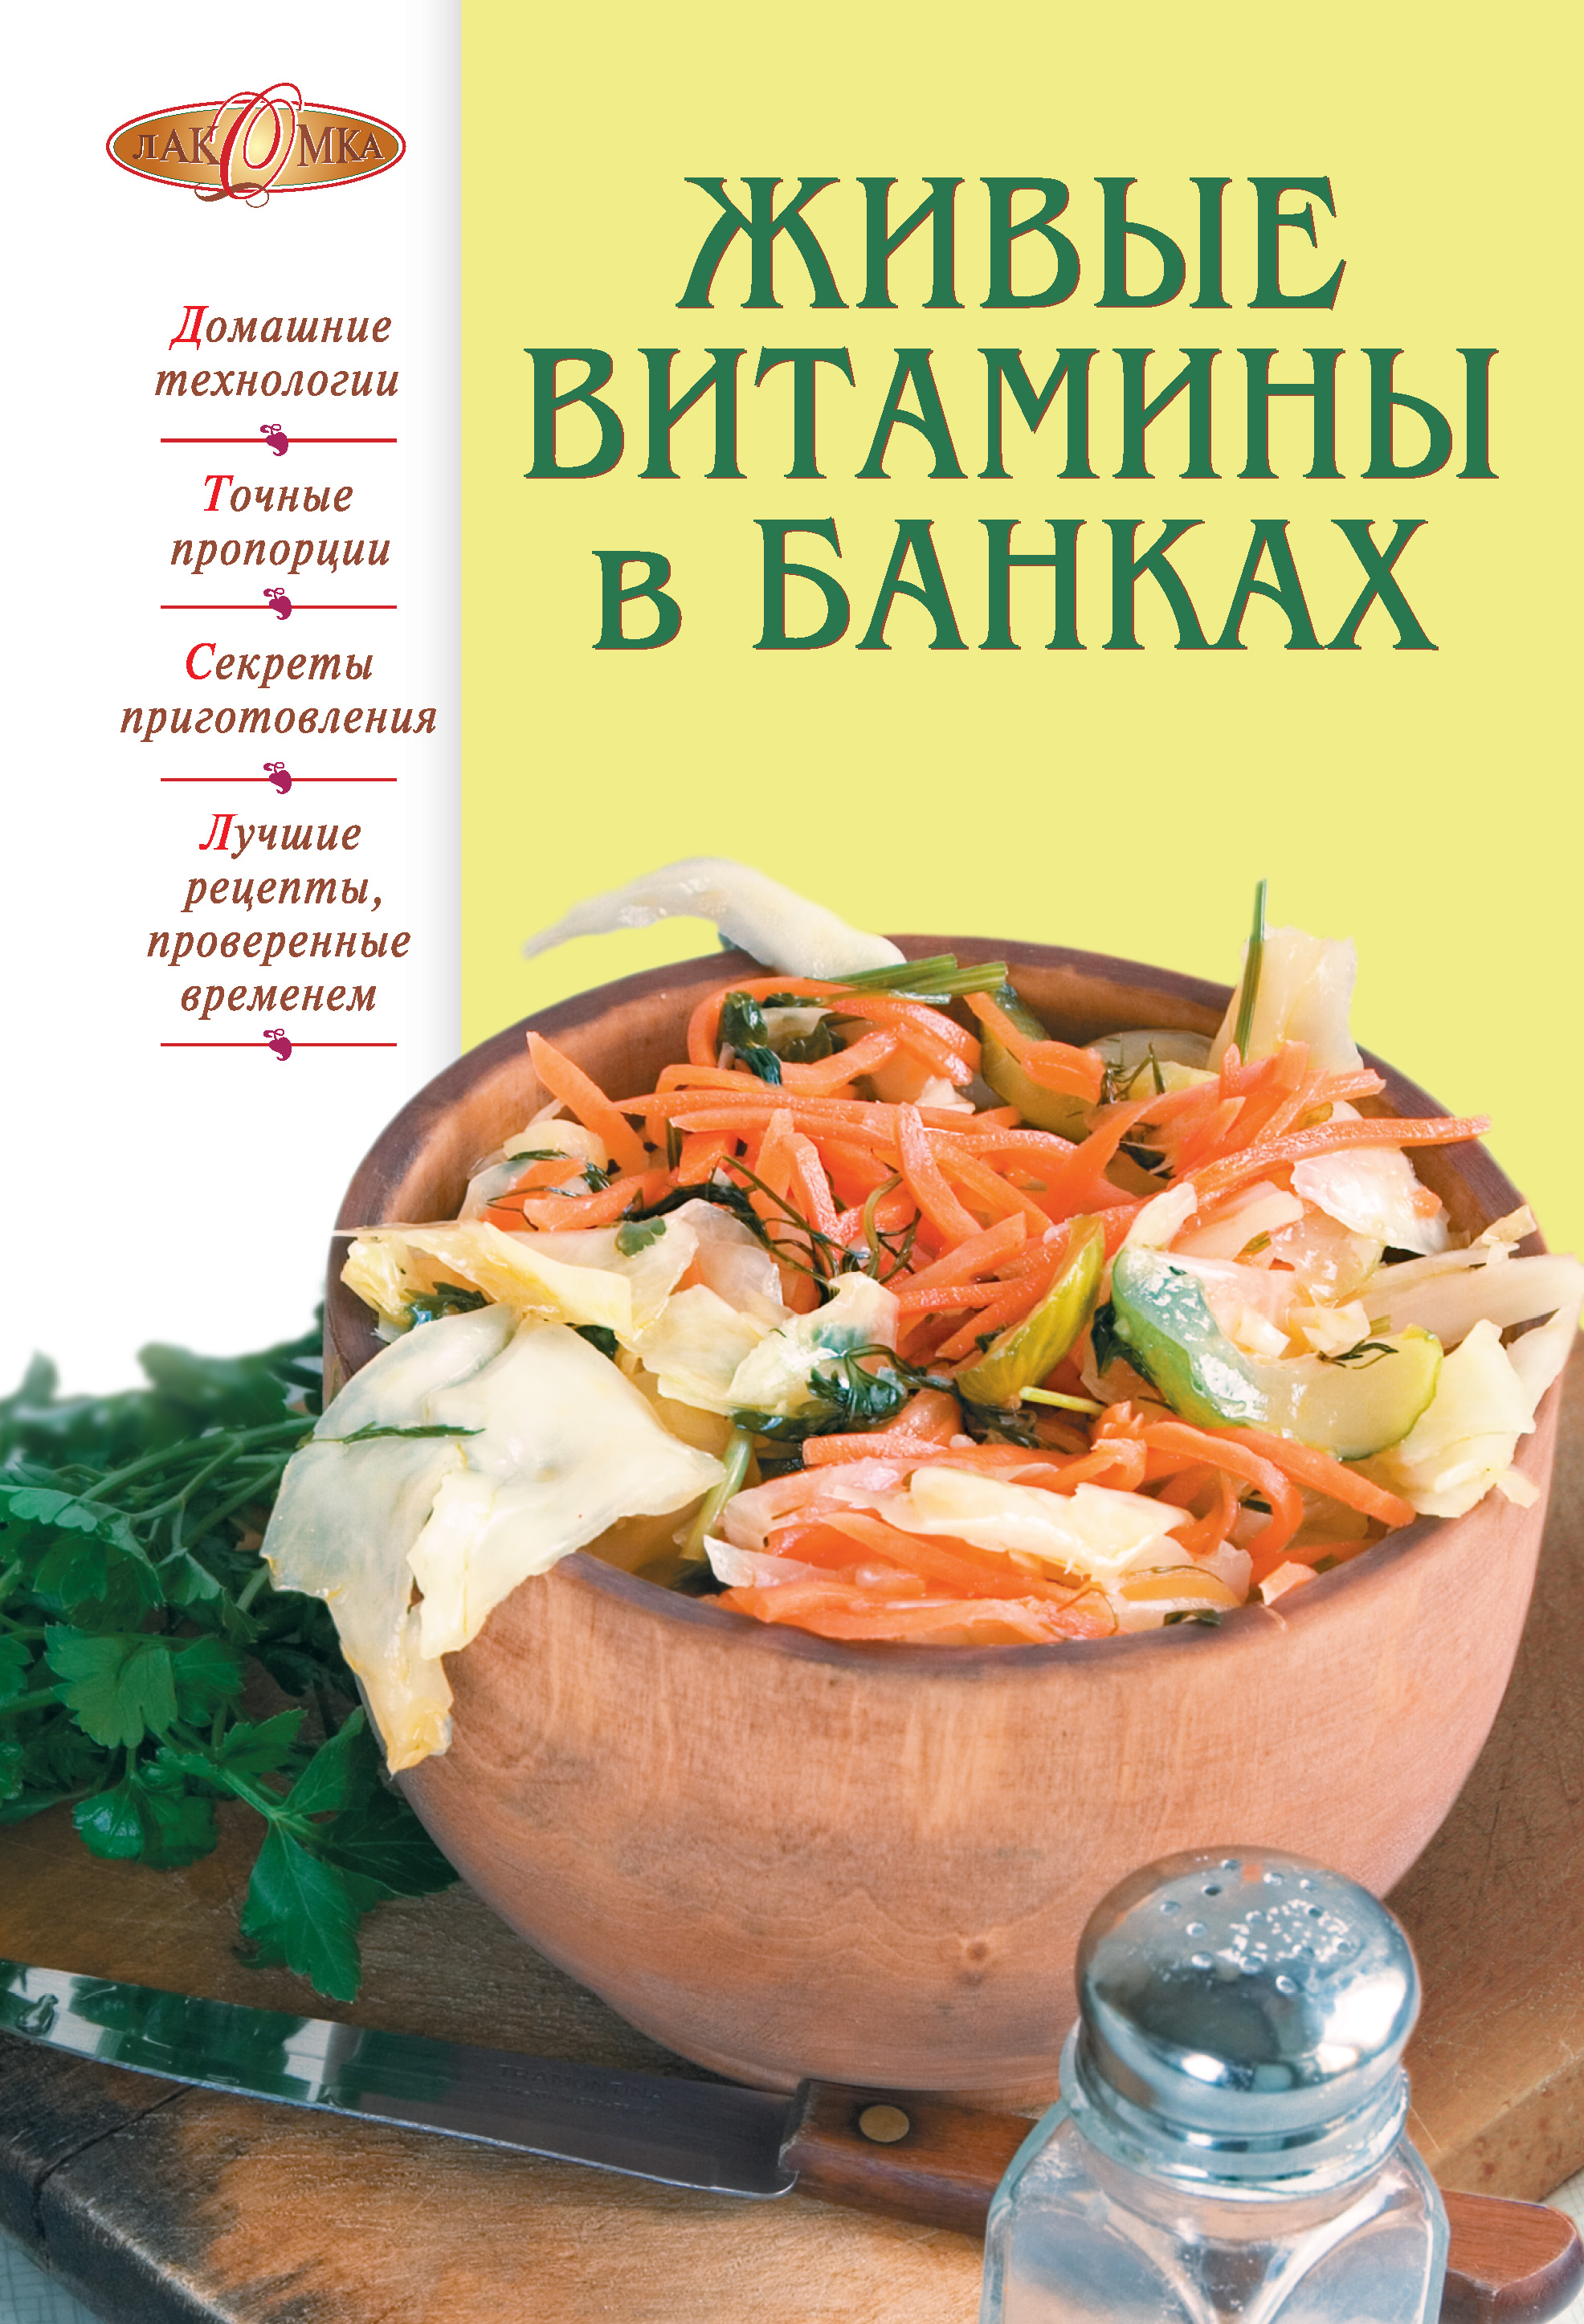 Книга Живые витамины в банках из серии Лакомка, созданная Т. Радина, может относится к жанру Кулинария. Стоимость электронной книги Живые витамины в банках с идентификатором 25925495 составляет 149.00 руб.